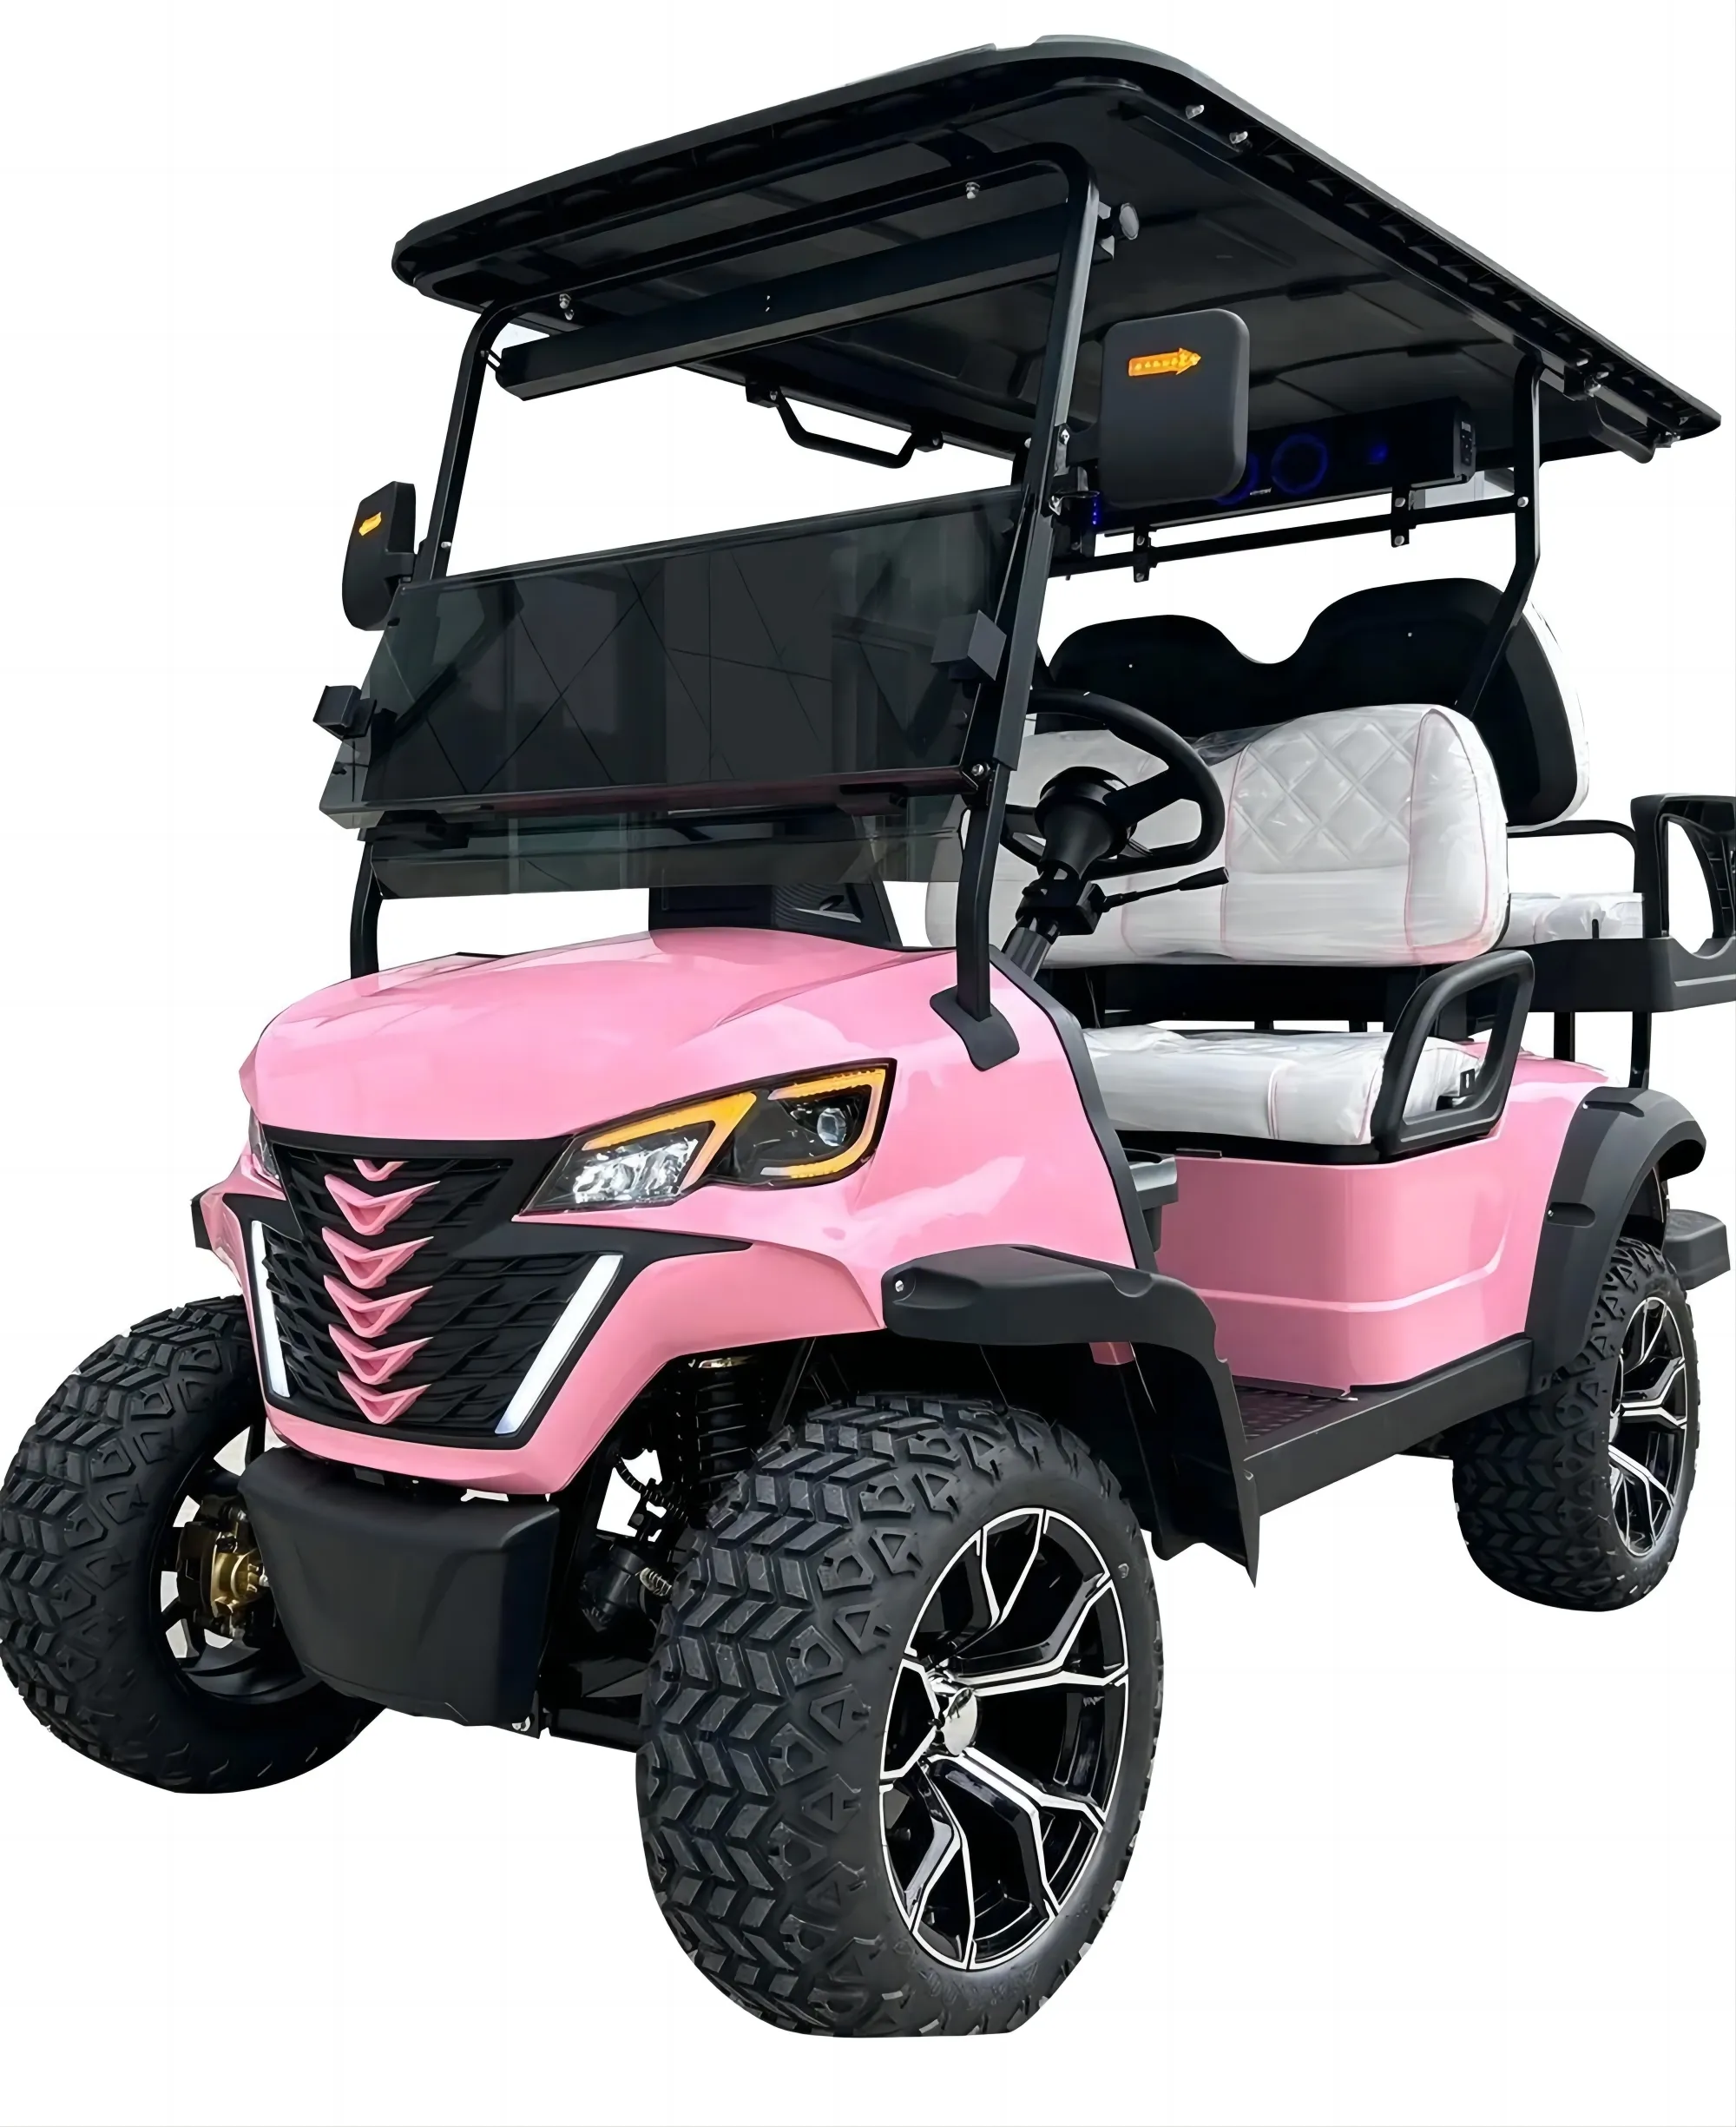 Batterie lithium-ion 72V Club Car Voiturette de golf rose Chariots de golf électriques pliants de chasse